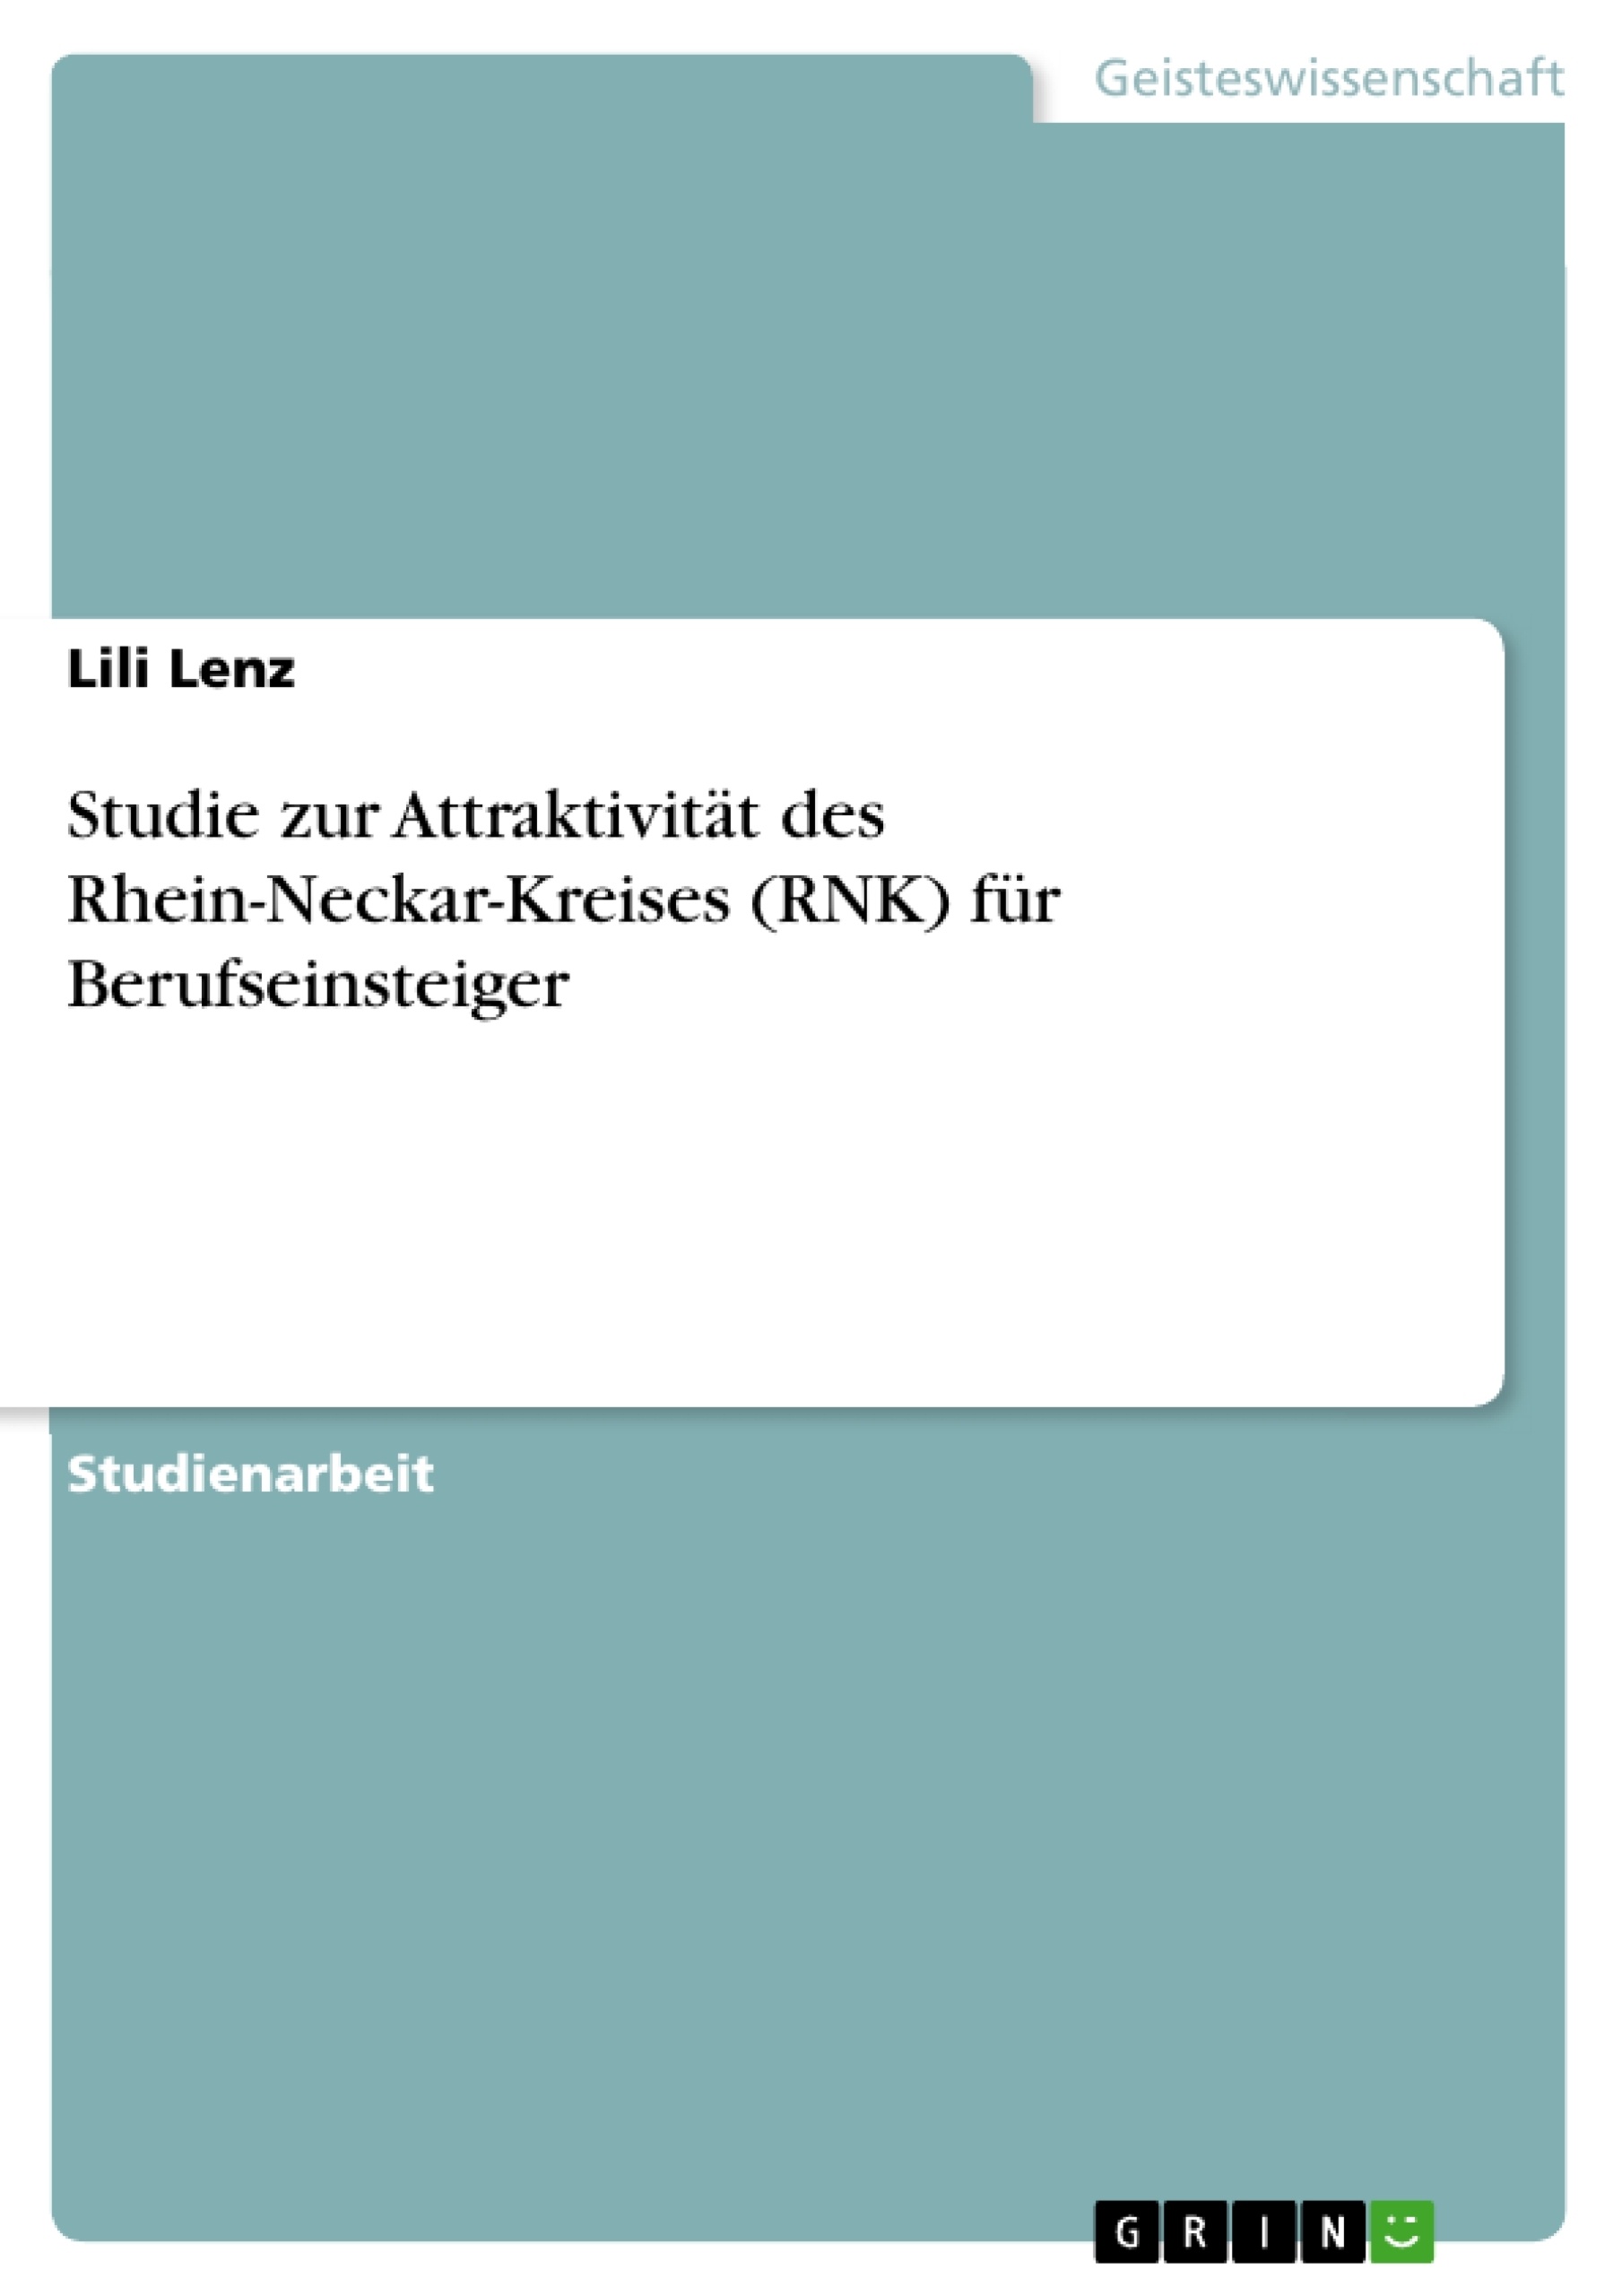 Title: Studie zur Attraktivität des Rhein-Neckar-Kreises (RNK) für Berufseinsteiger